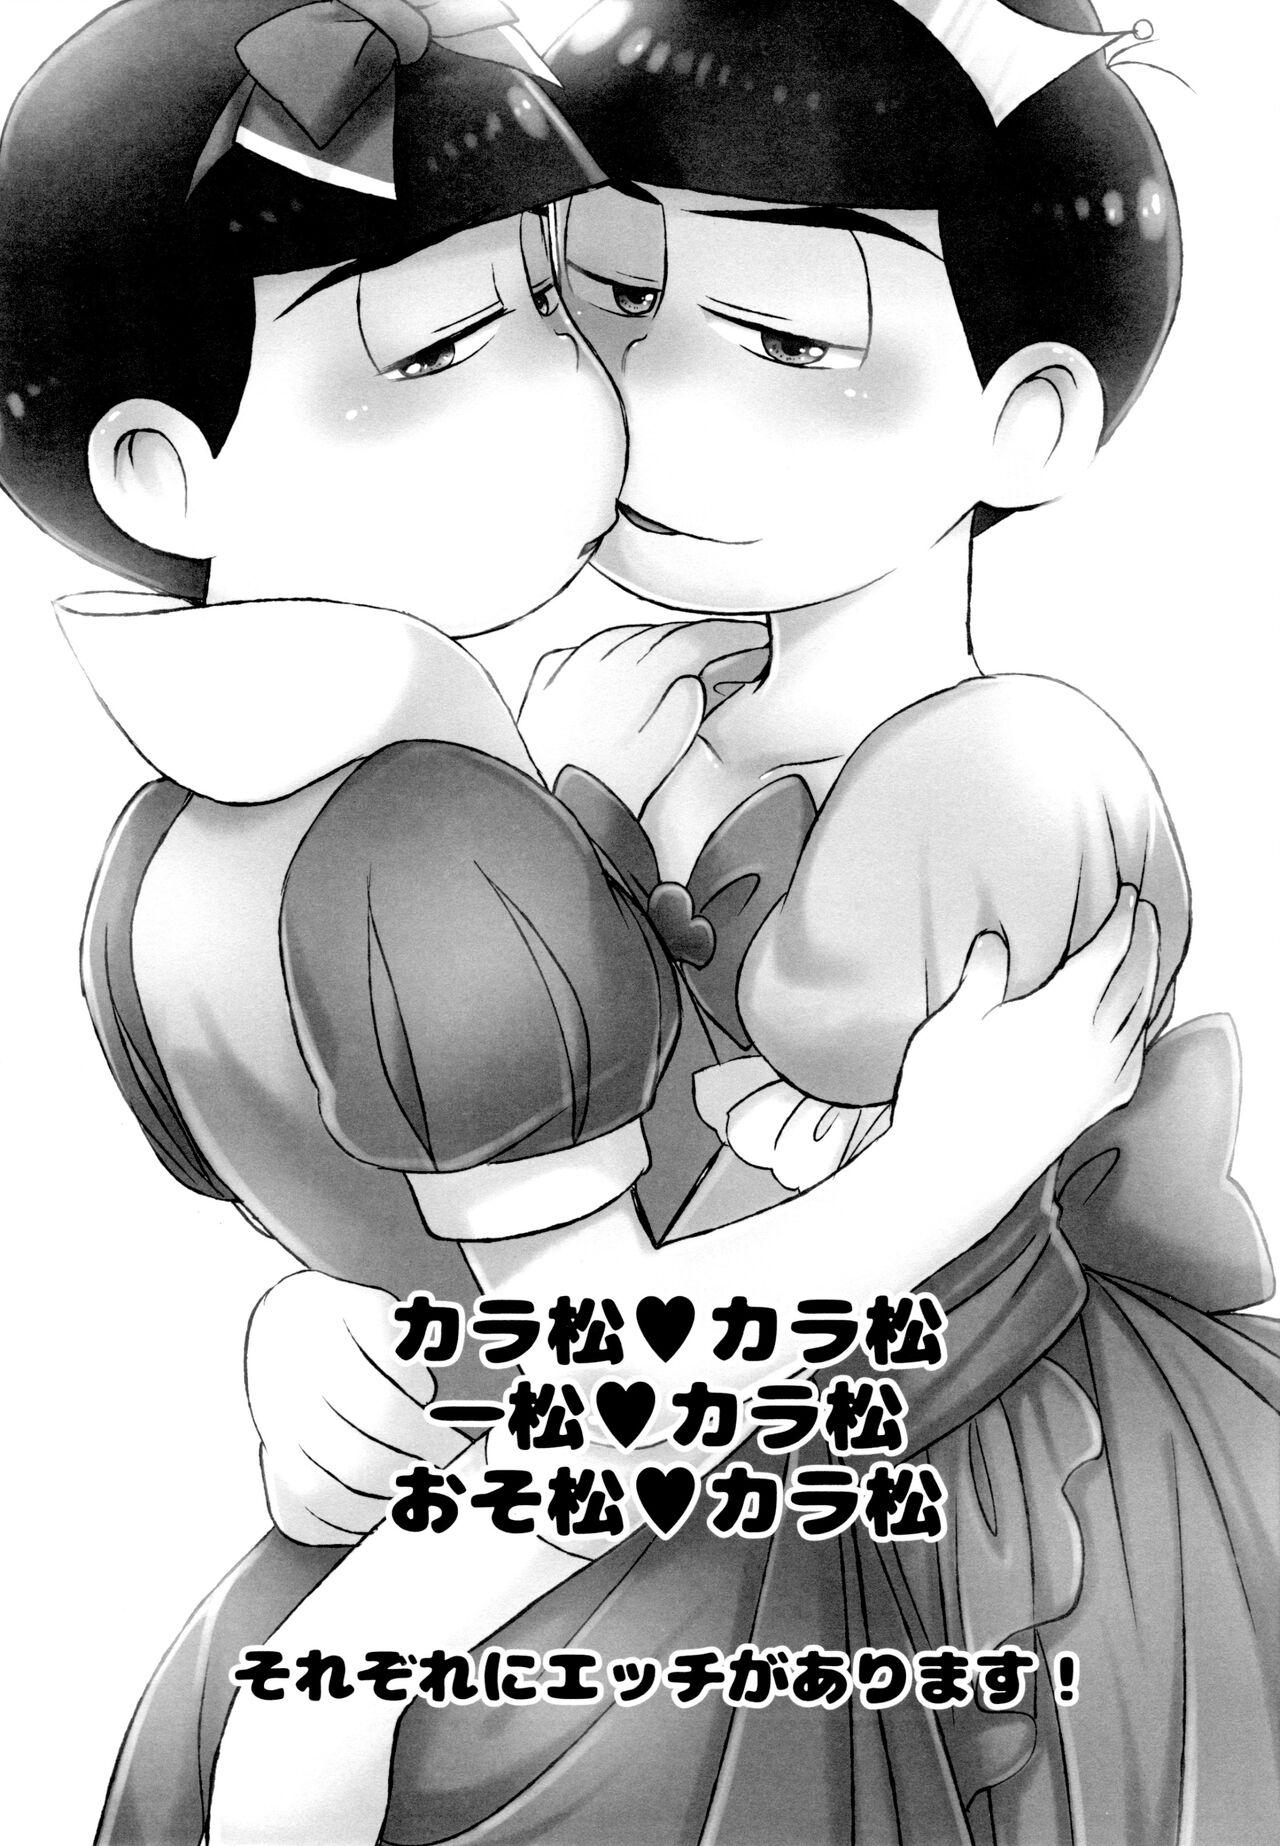 Gay Military O hime-sama o shizuka ni - Osomatsu san Cornudo - Page 2